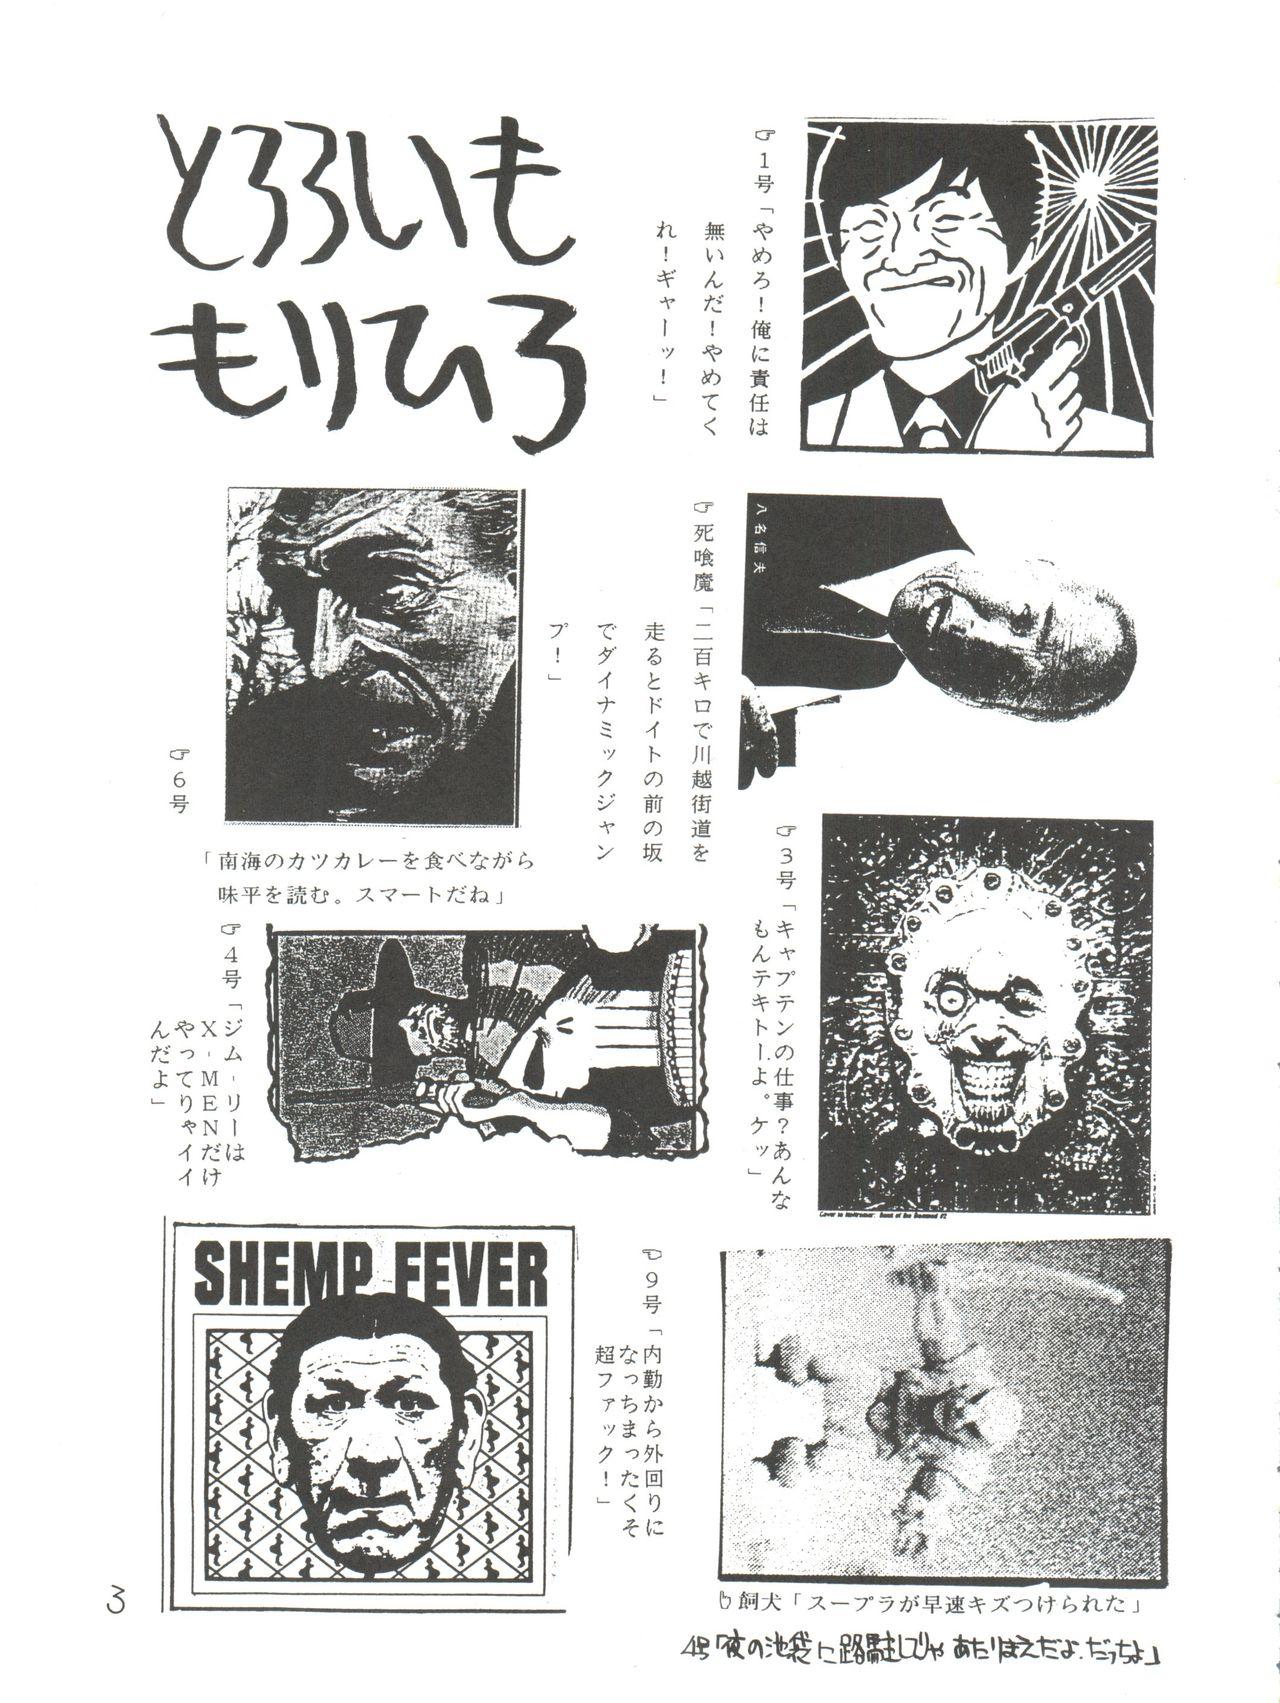 Whores Tororoimo Morihiro - Dragon quest Hime chans ribbon Densetsu no yuusha da garn Head - Page 3